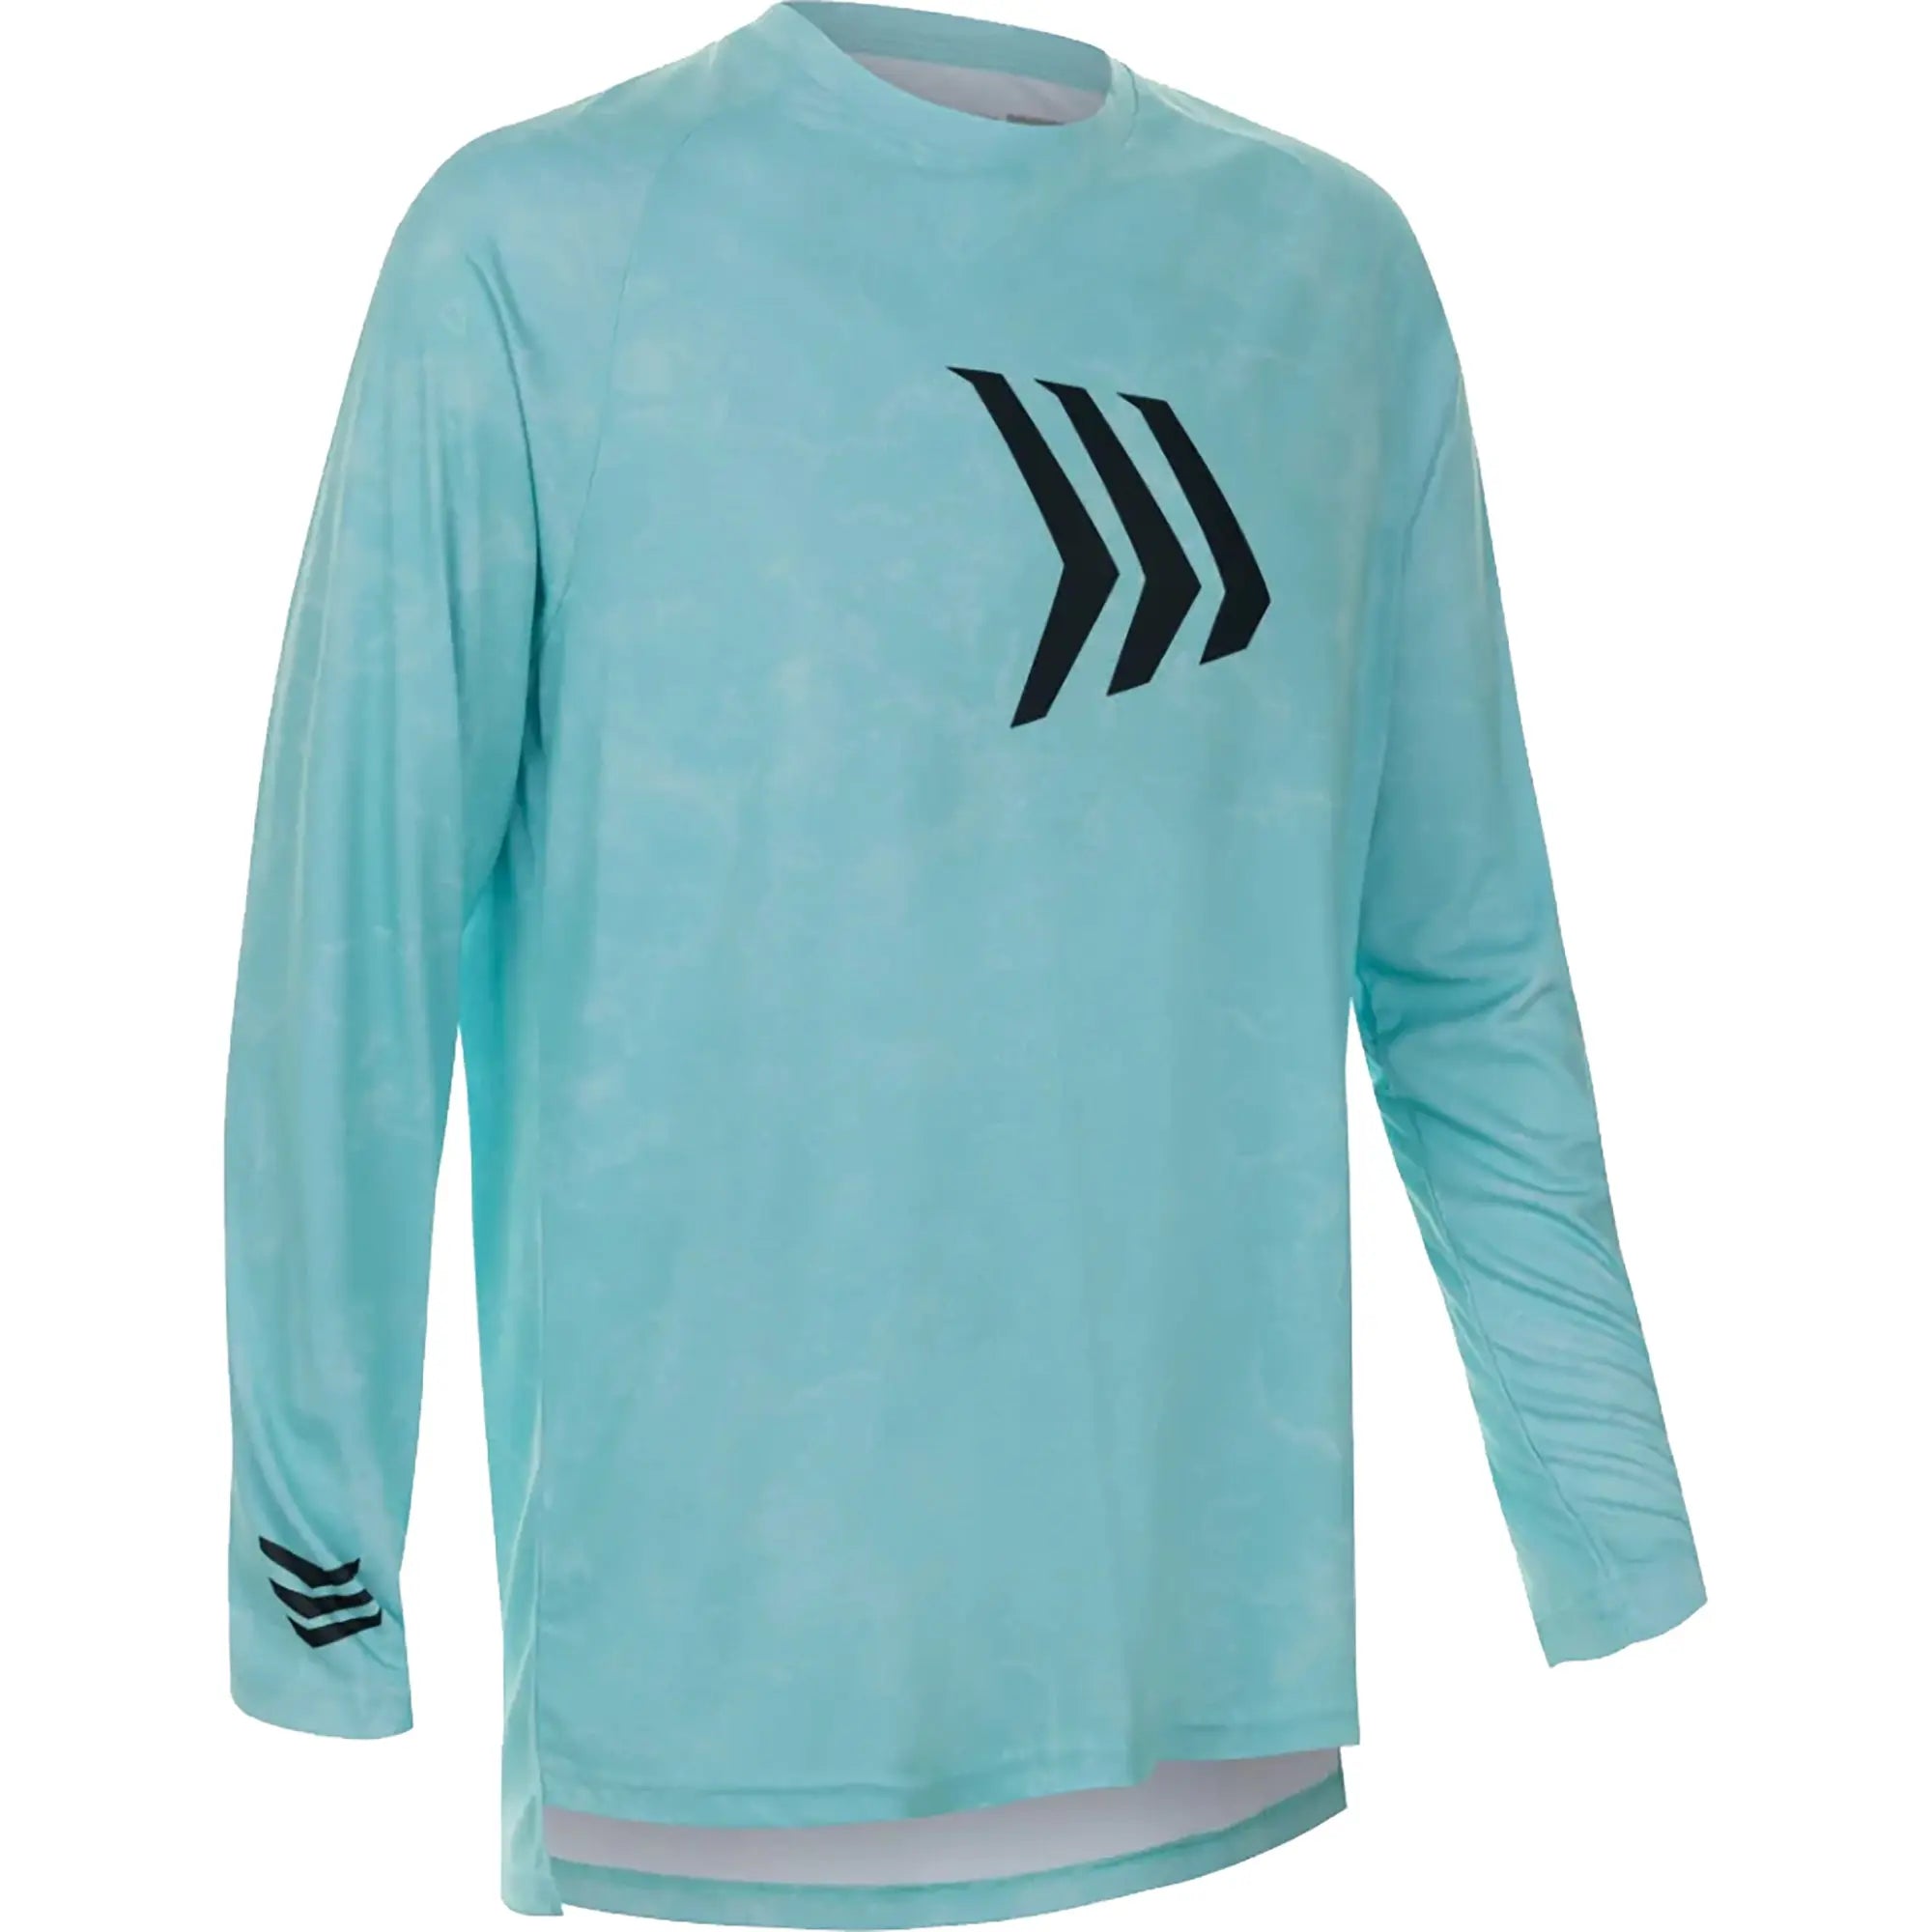 https://forzasports.com/cdn/shop/files/Gillz-Contender-Series-ASSLT-UV-Long-Sleeve-T-Shirt-Aruba-Blue-Gillz-654955.jpg?v=1706537208&width=2000